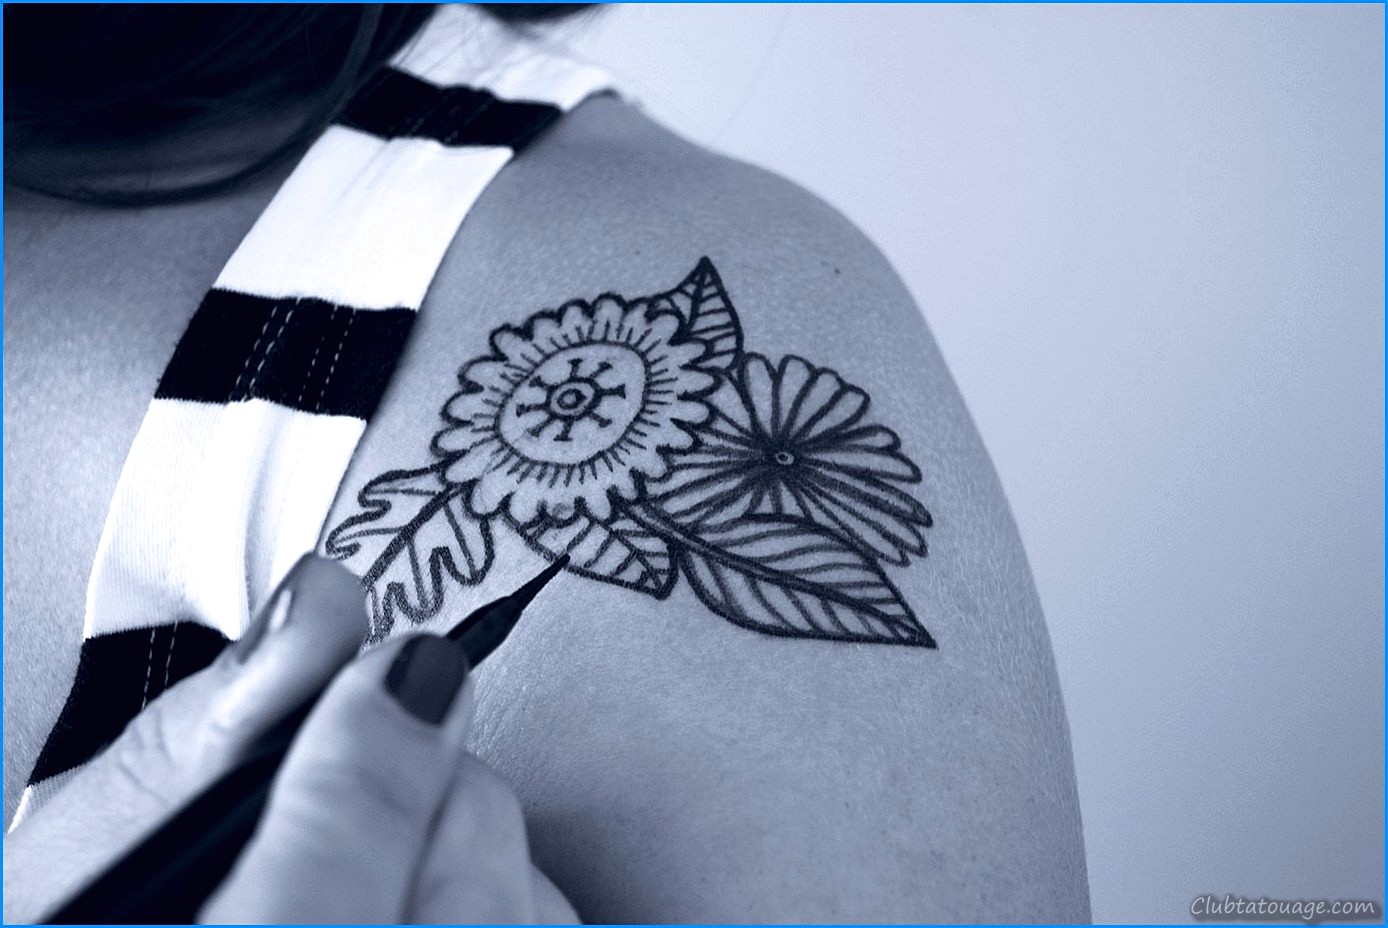 Comment faire des tatouages éphémères